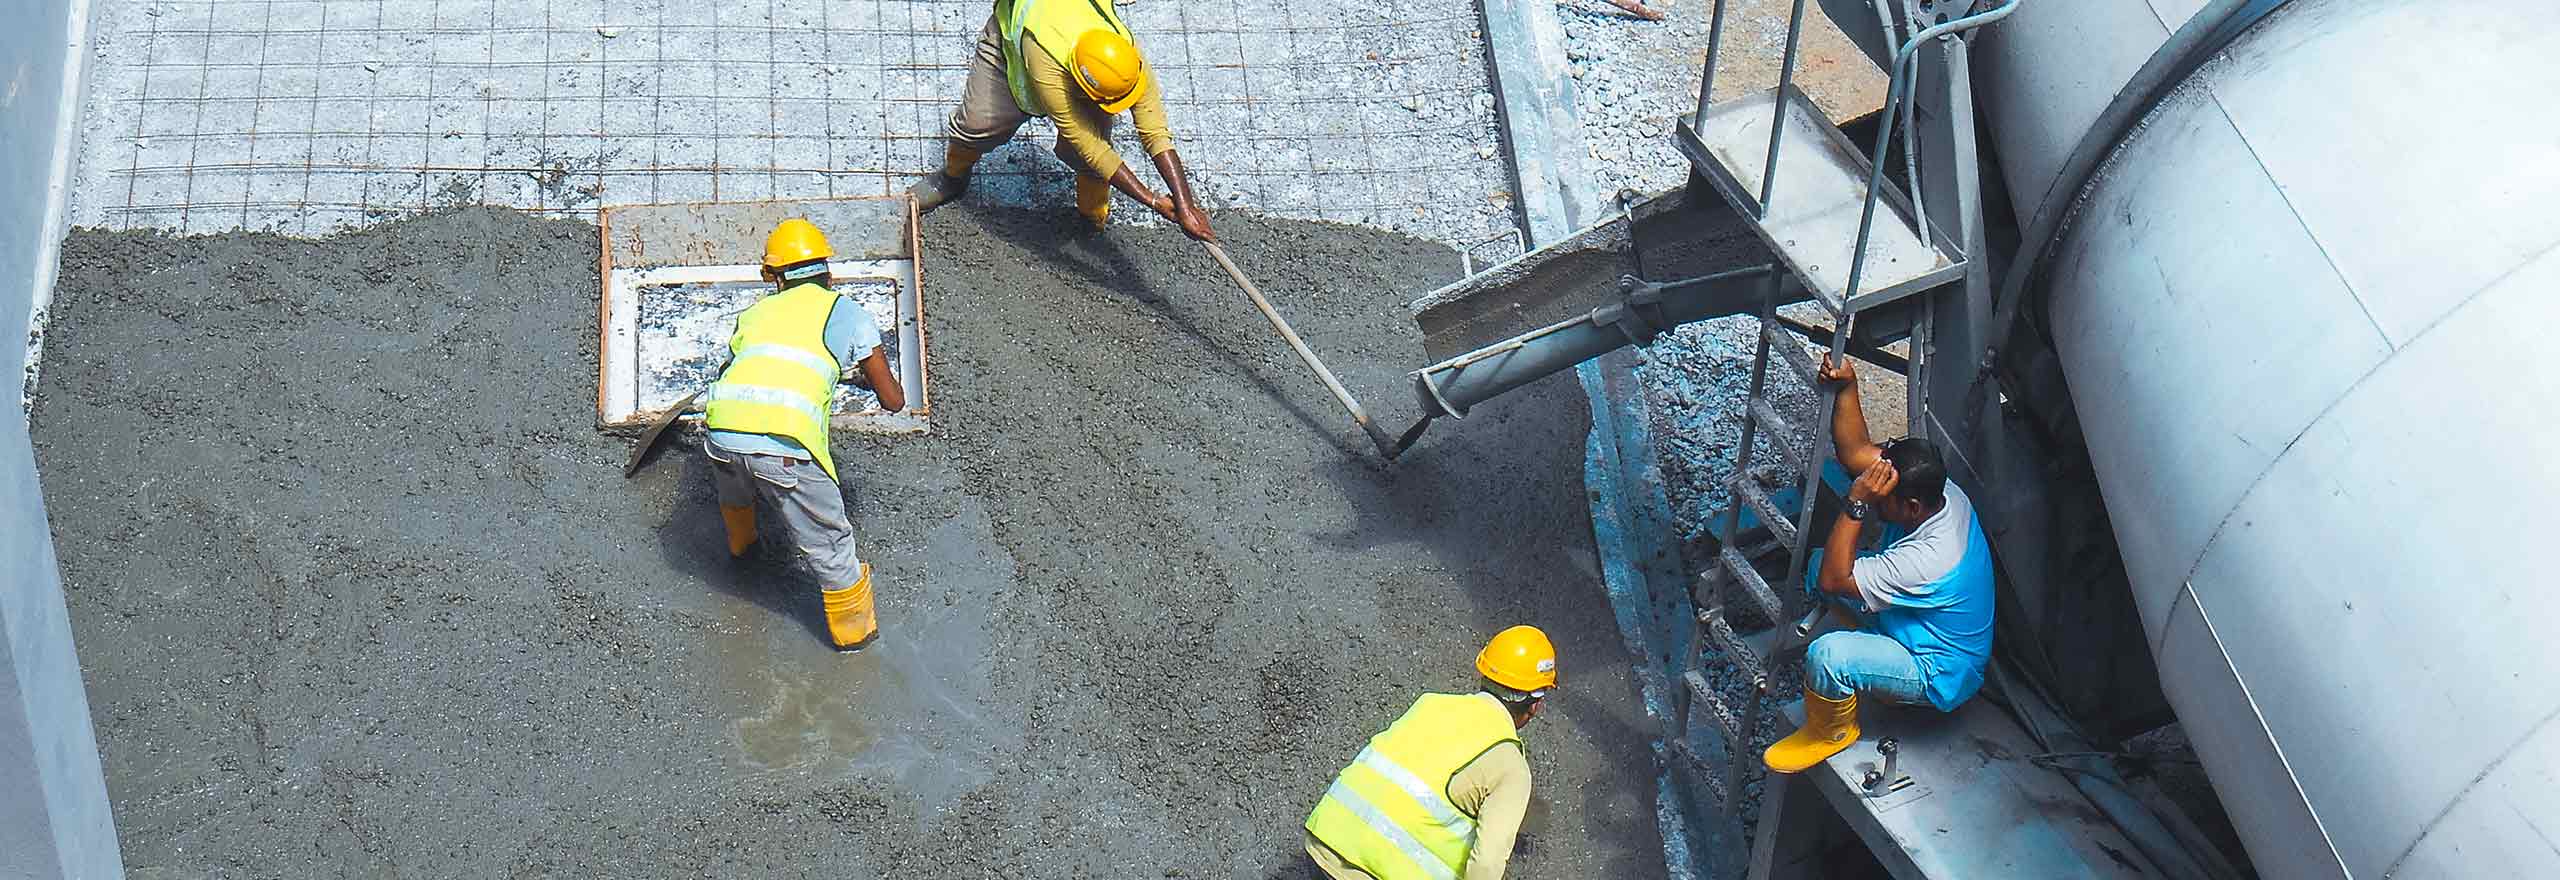 Ouvriers de la construction utilisant une variété d’équipements pour couler et lisser une section de dalle de béton.